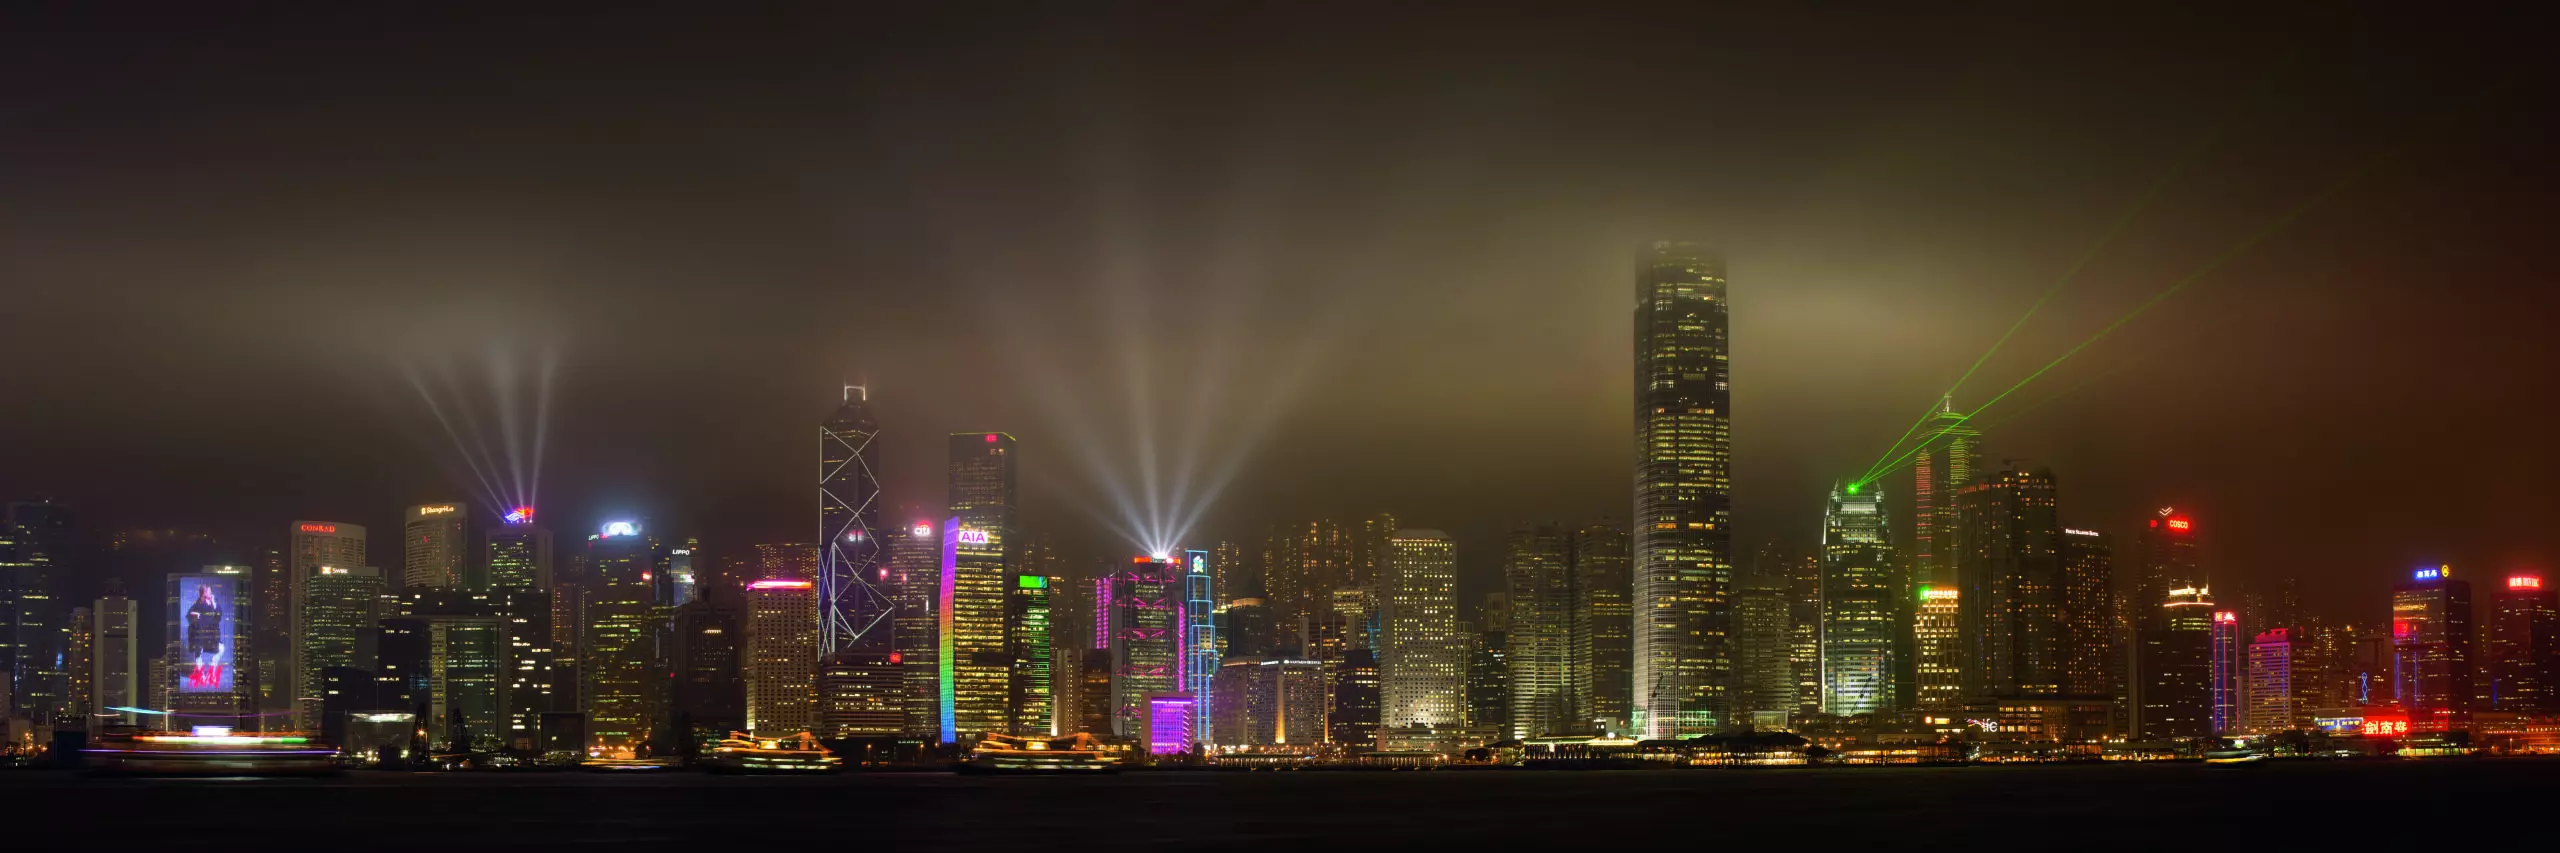 Wandbild (5873) Hong Kong Island by Daniel Murphy,1x.com präsentiert: Kreatives,Architektur,Skylines,Sehenswürdigkeiten,Sonstiges Kreatives